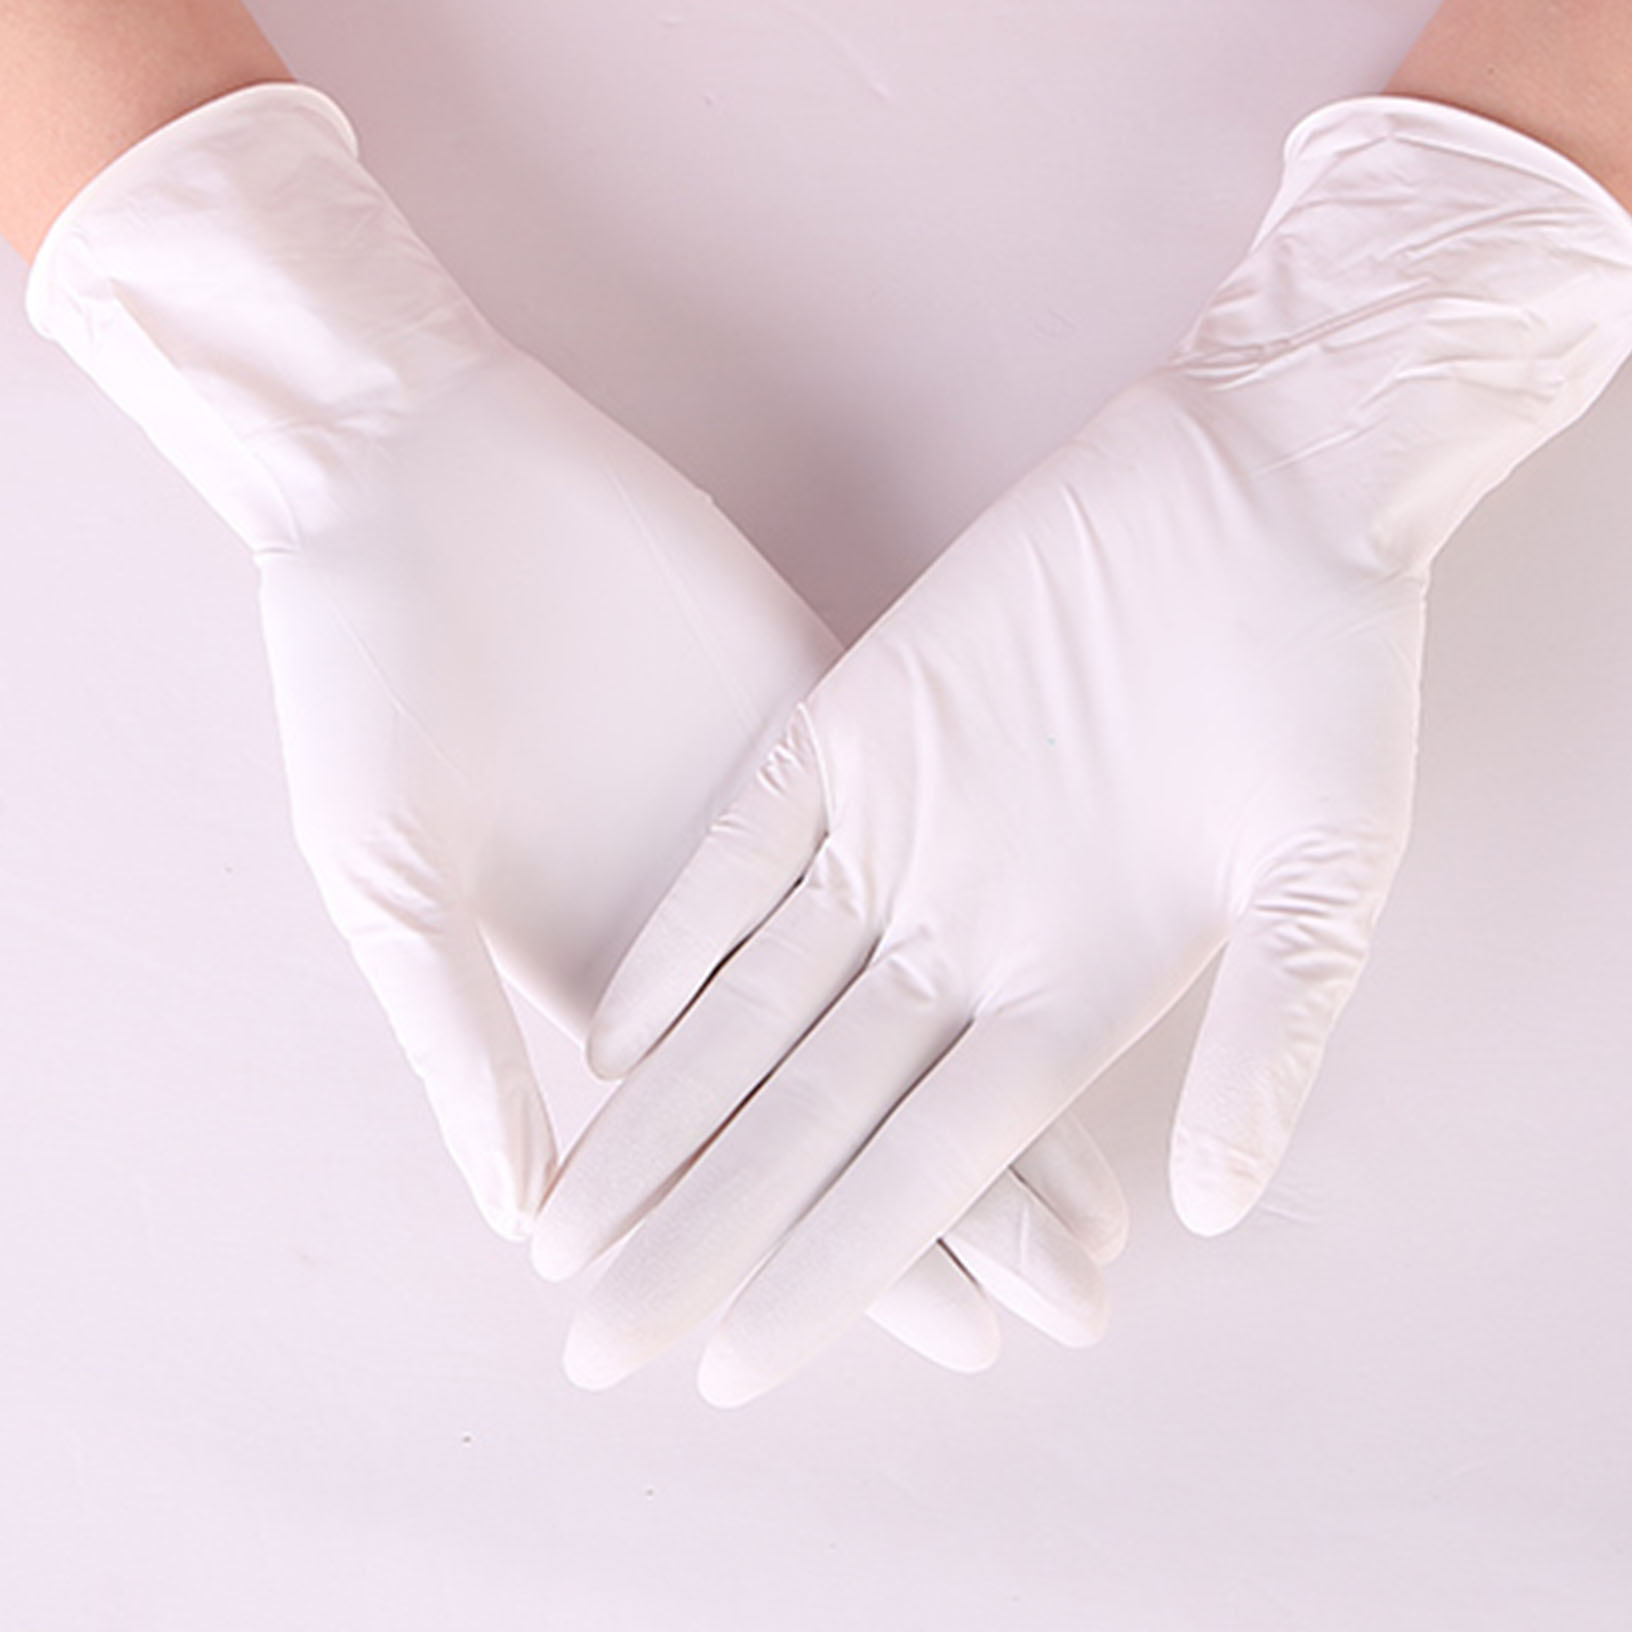 non surgical gloves